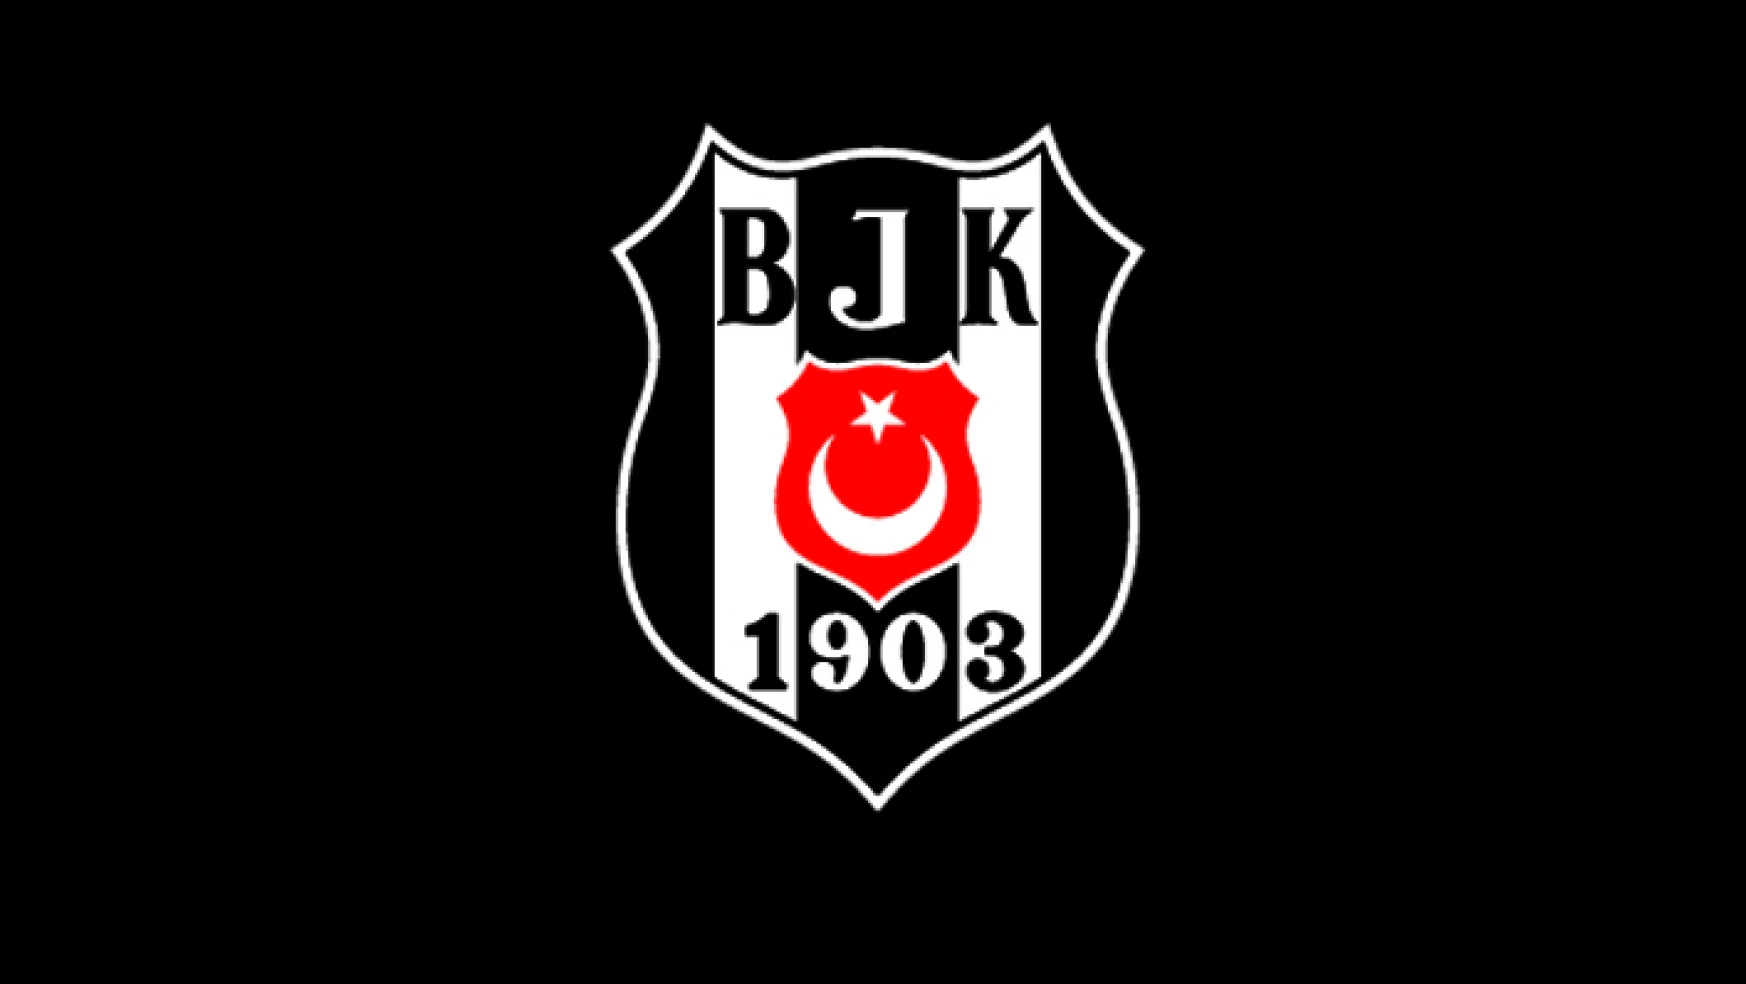 Göztepeli oyuncu Beşiktaş Aygaz’da